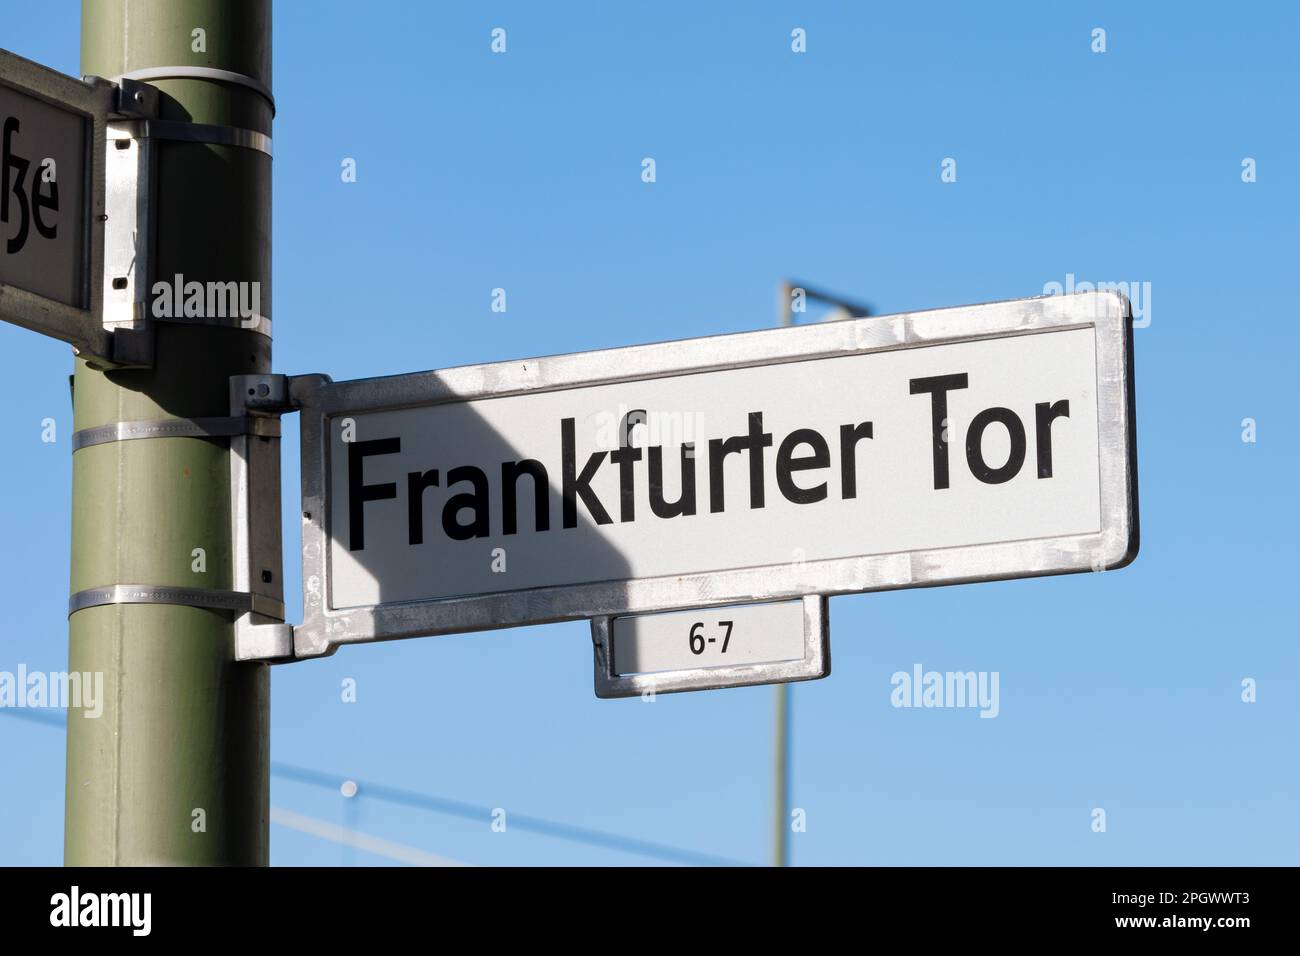 Frankfurter Tor, cartello con il nome della strada a Berlino Friedrichshain. Telaio in metallo con una piastra bianca all'interno. Le lettere sono stampate in nero sulla targhetta. Foto Stock